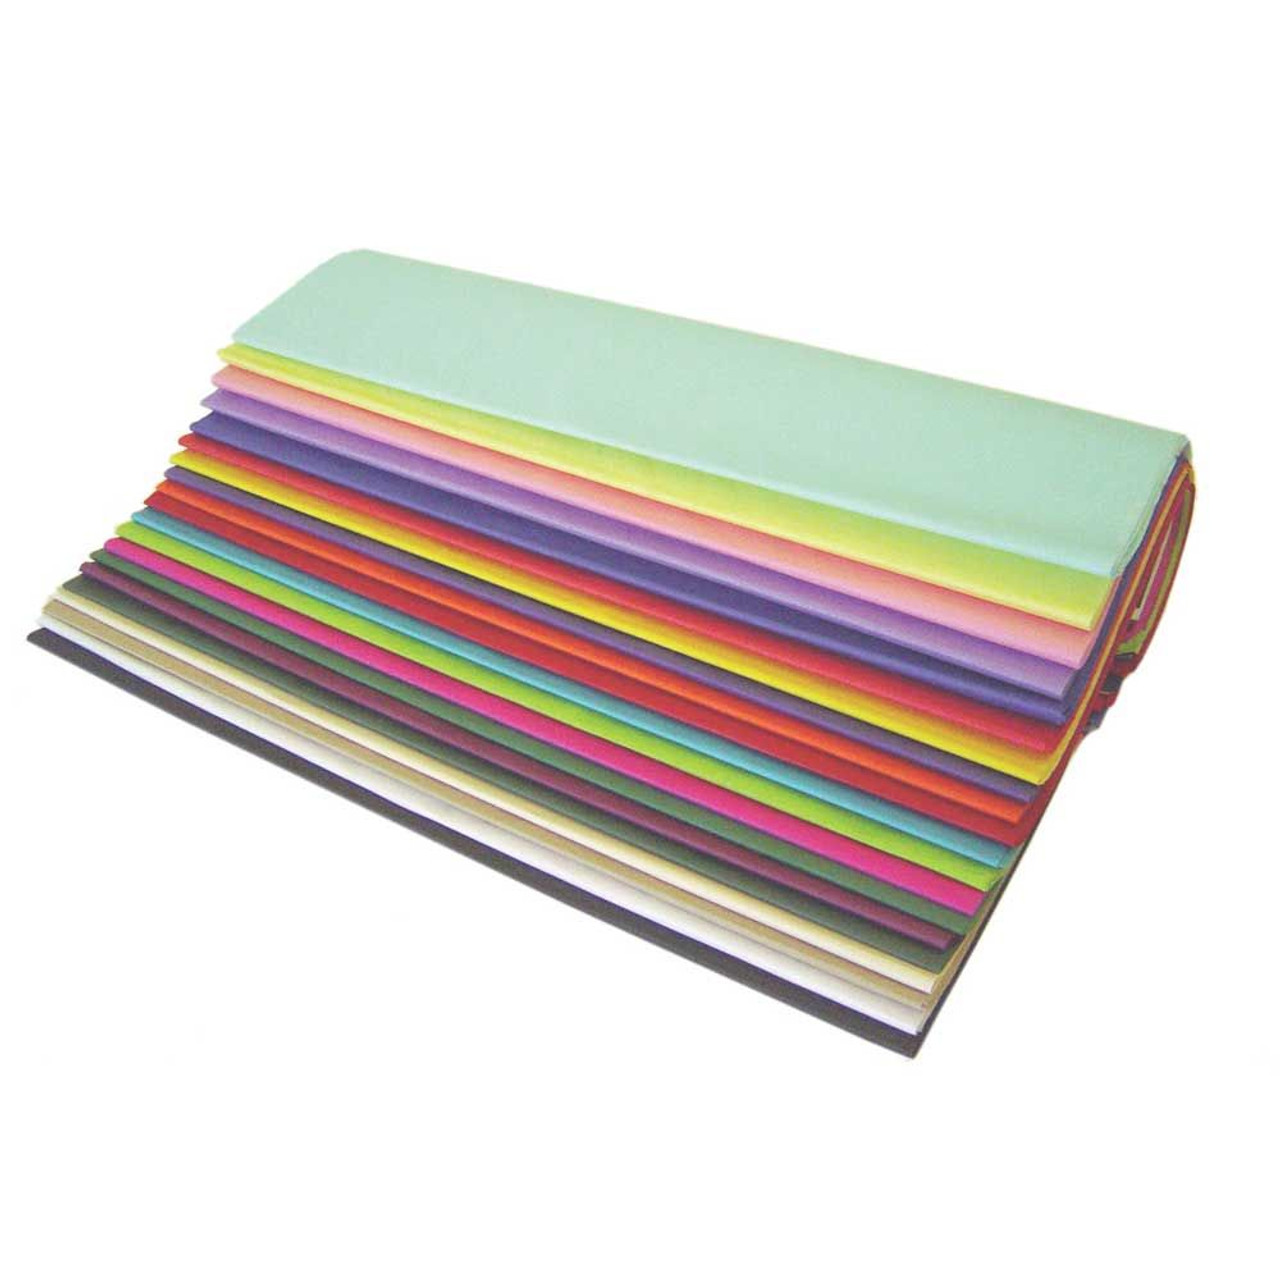 20x30 Premium Colored Tissue Paper